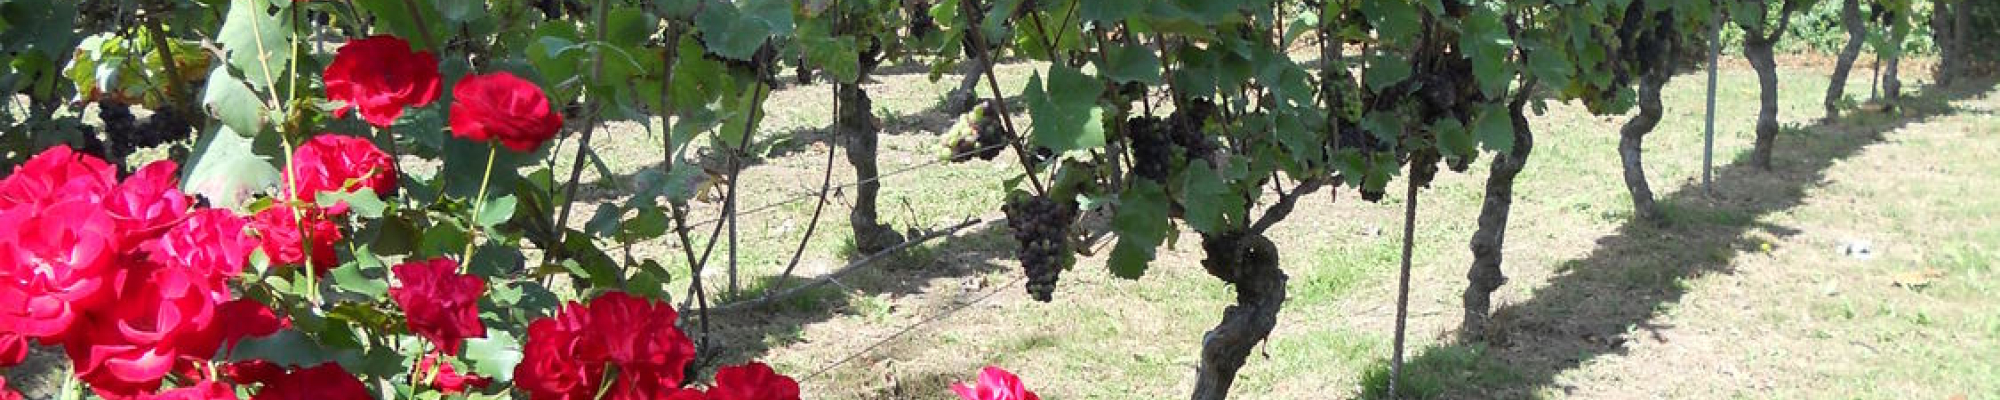 wijnranken en bloemen in de wijngaard den eik